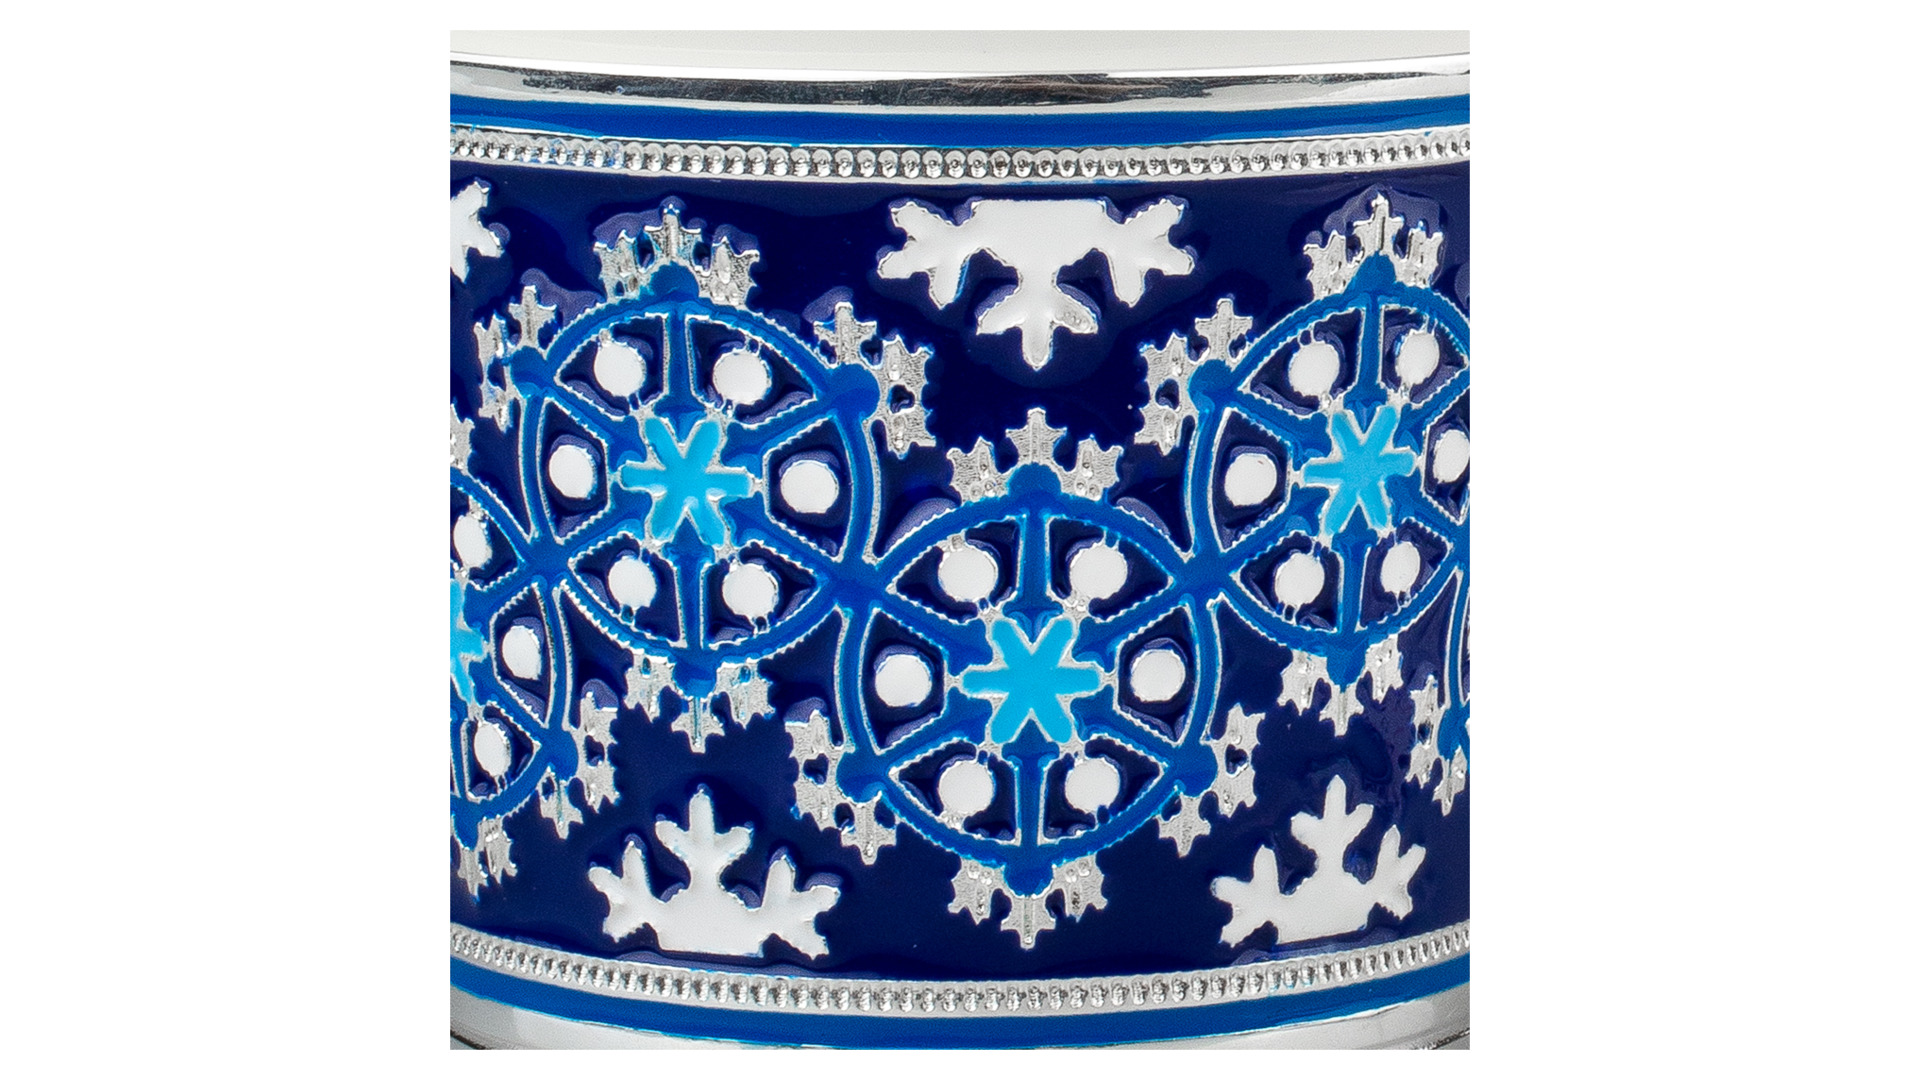 Чашка кофейная с блюдцем Русские самоцветы Снежинка 73,64 г, серебро 925